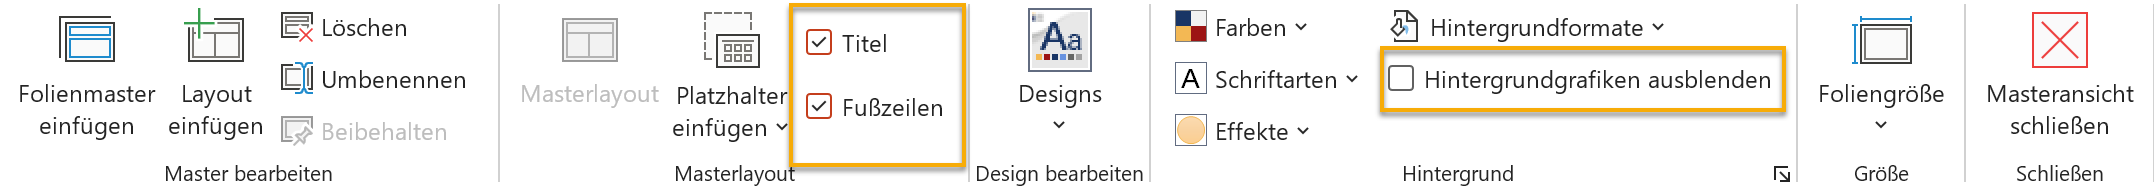 Screenshot PowerPoint: Registerkarte Folienmaster, markiert sind die Menüpunkte Titel, Fußzeile und Hintergrundgrafiken ausblenden